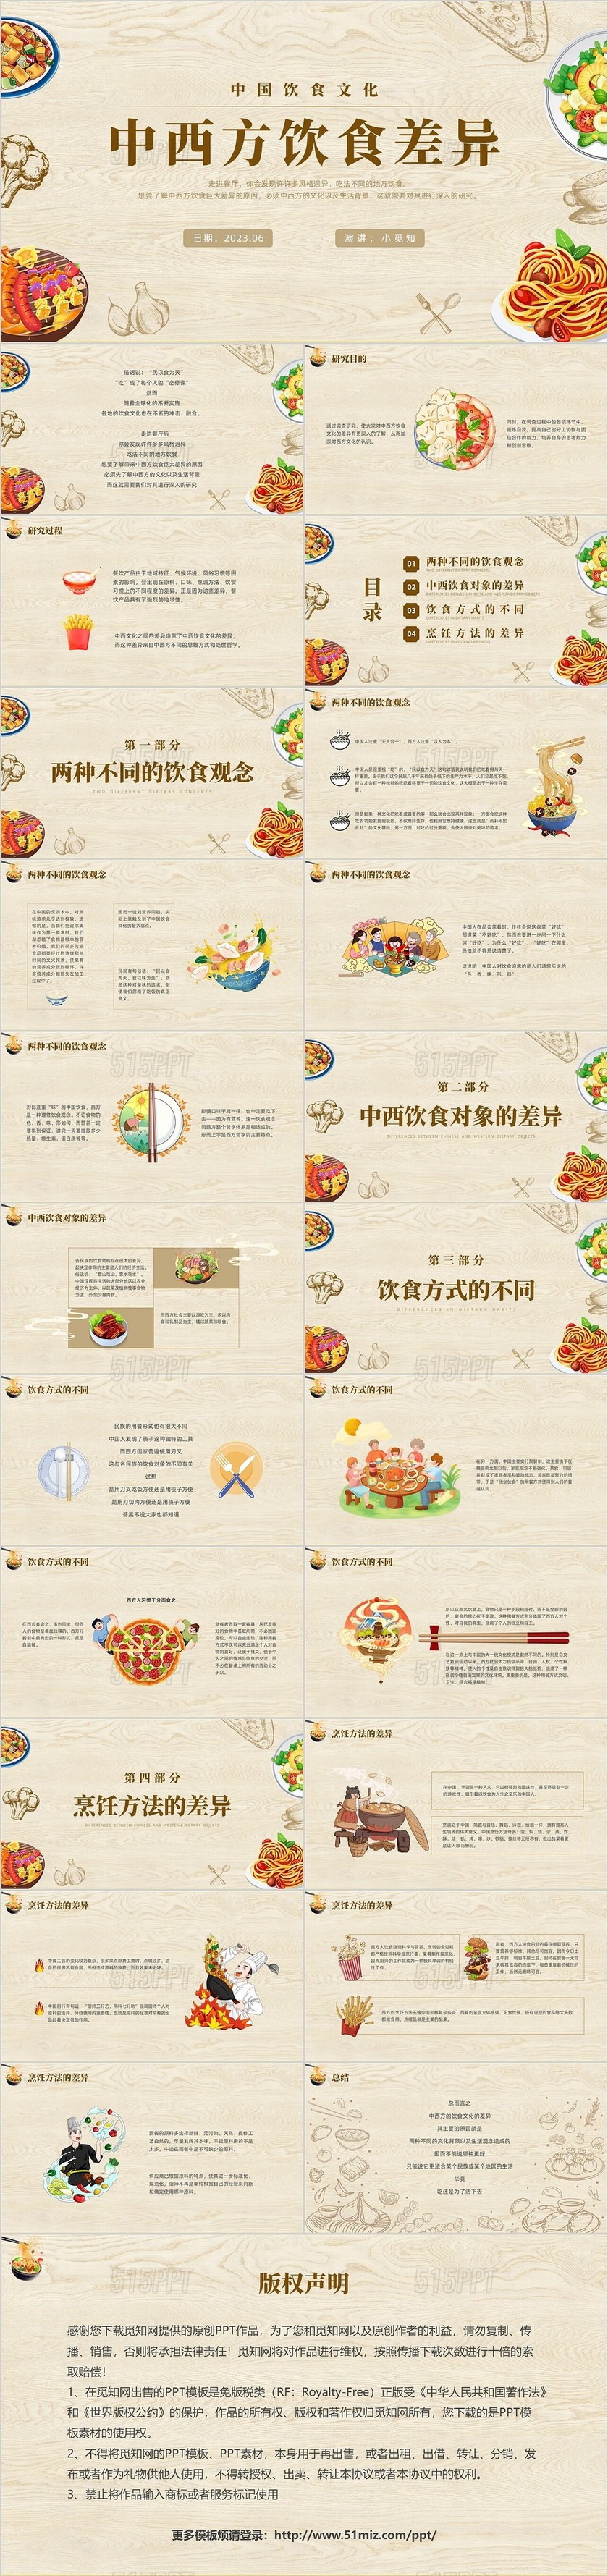 黄色简约风中西方饮食差异主题课件PPT模板中国传统文化